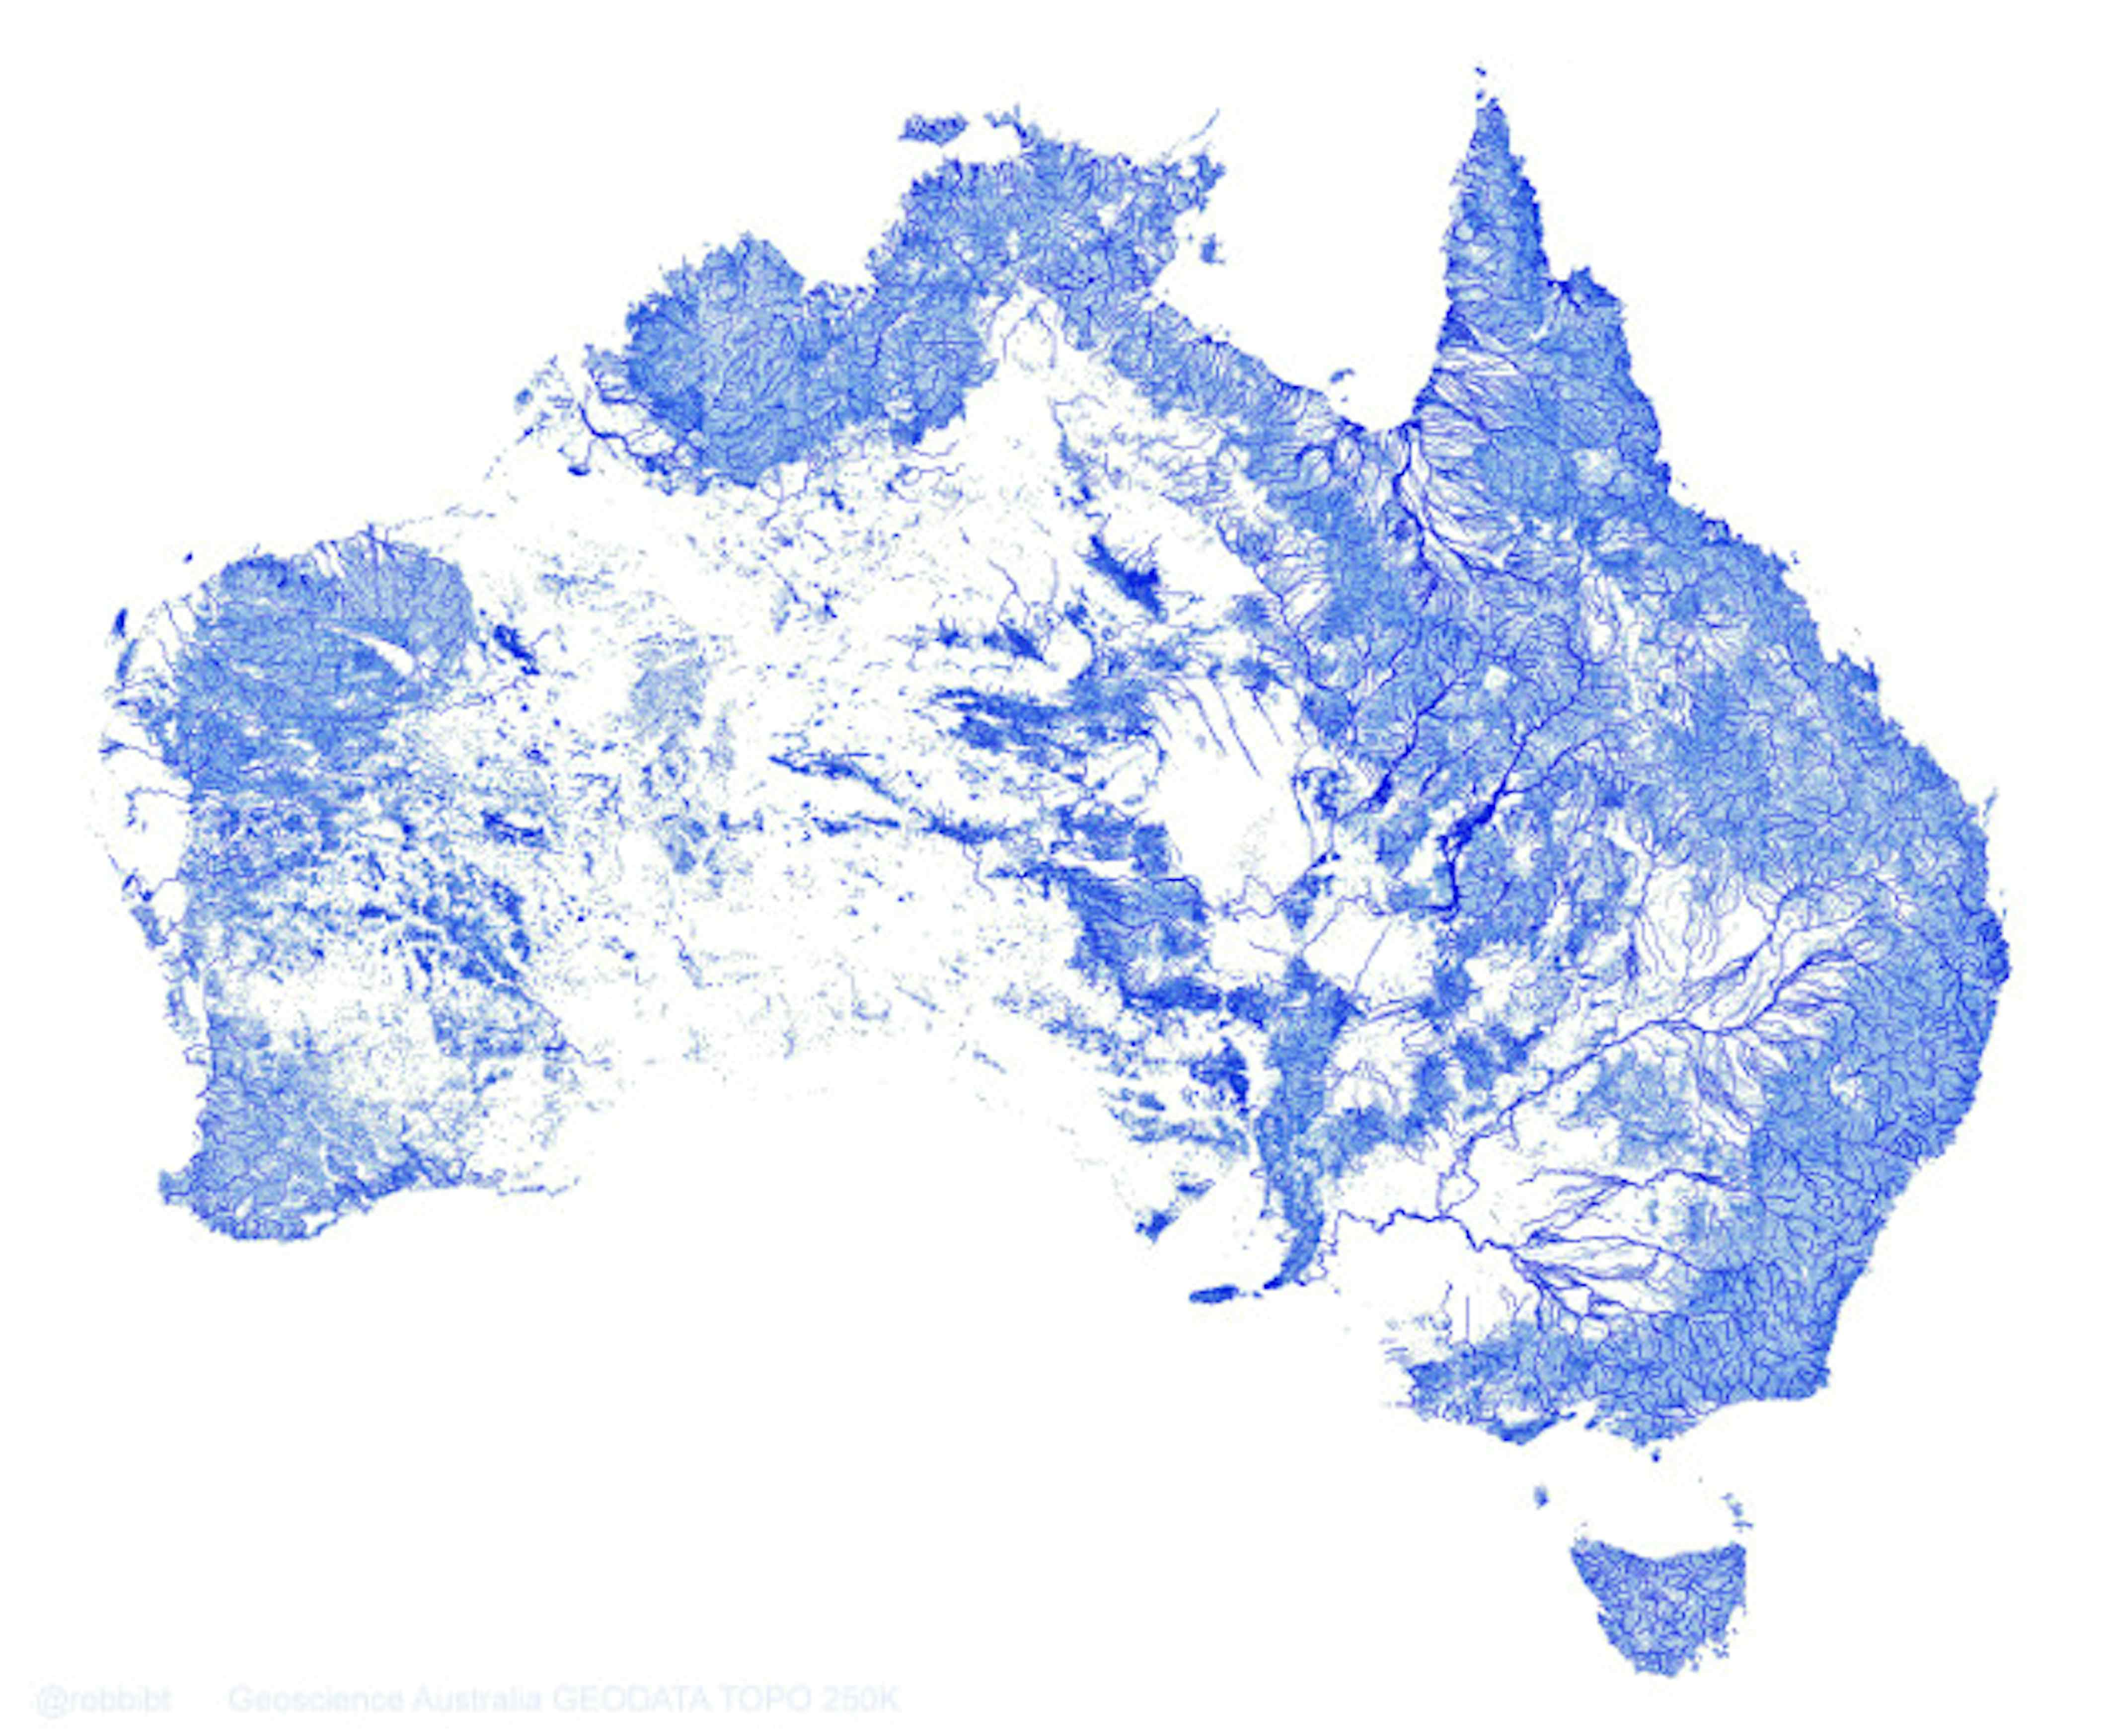 Australia Rivers 1 ?auto=format&fit=crop&sharp=10&vib=20&ixlib=react 8.6.4&w=850&q=20&dpr=5